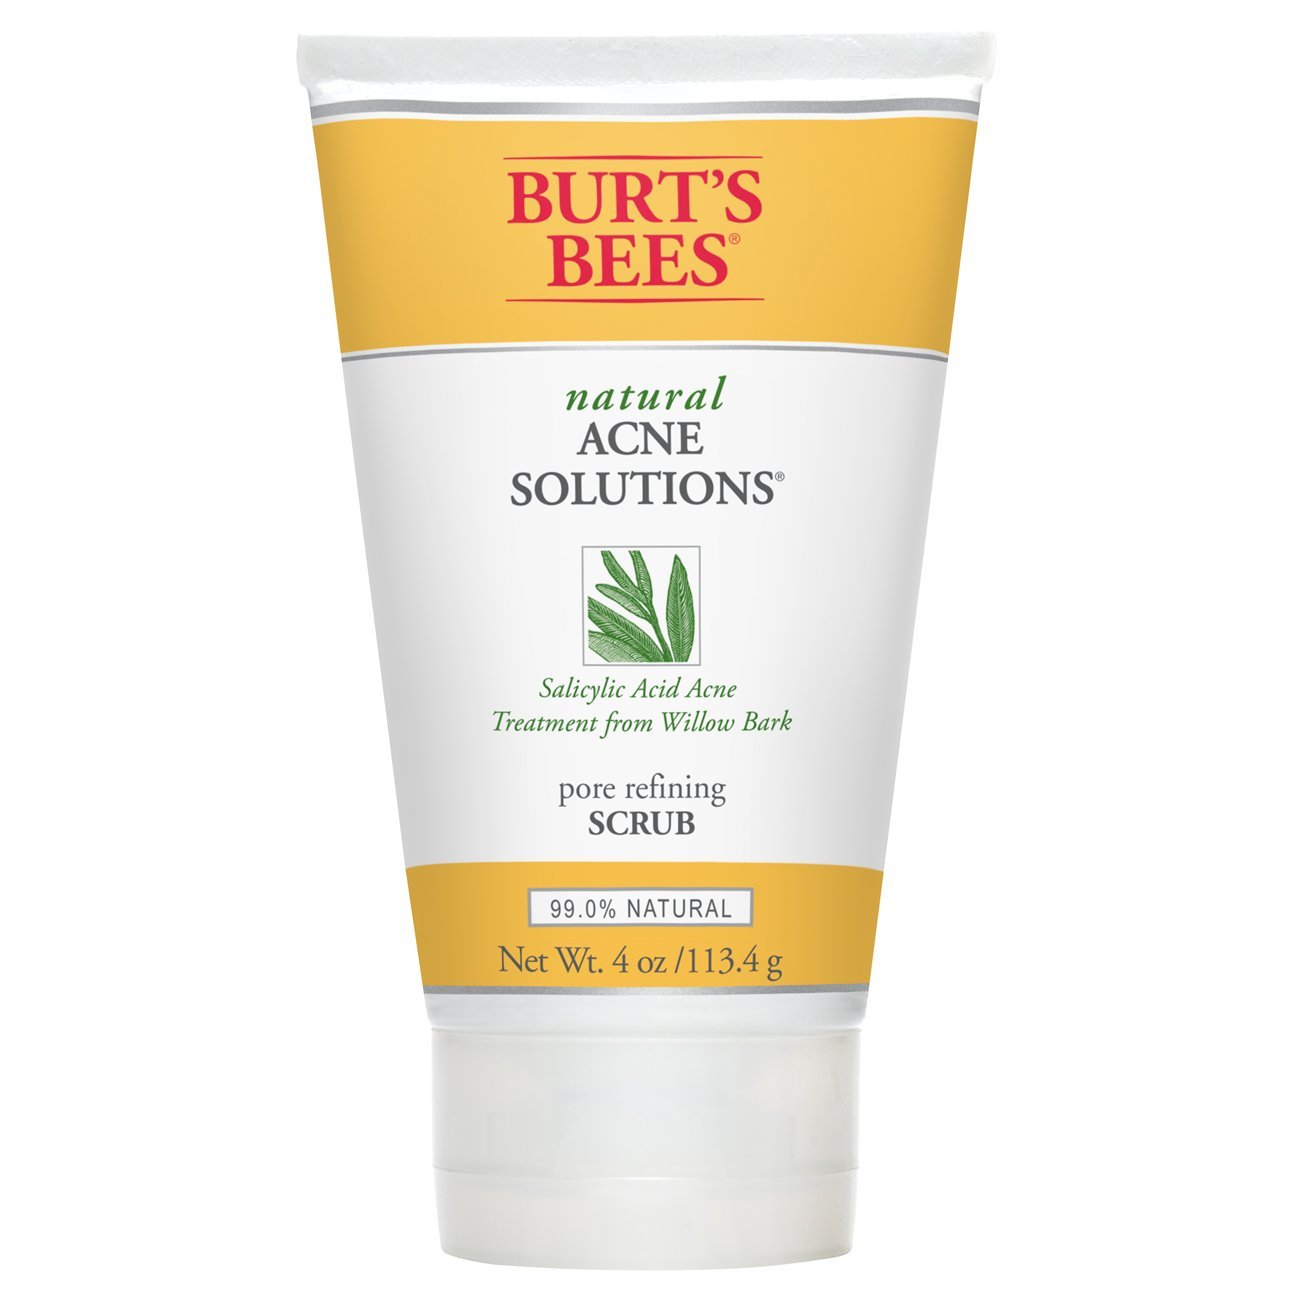 Burt's Bees Pore Refining Scrub Reviews